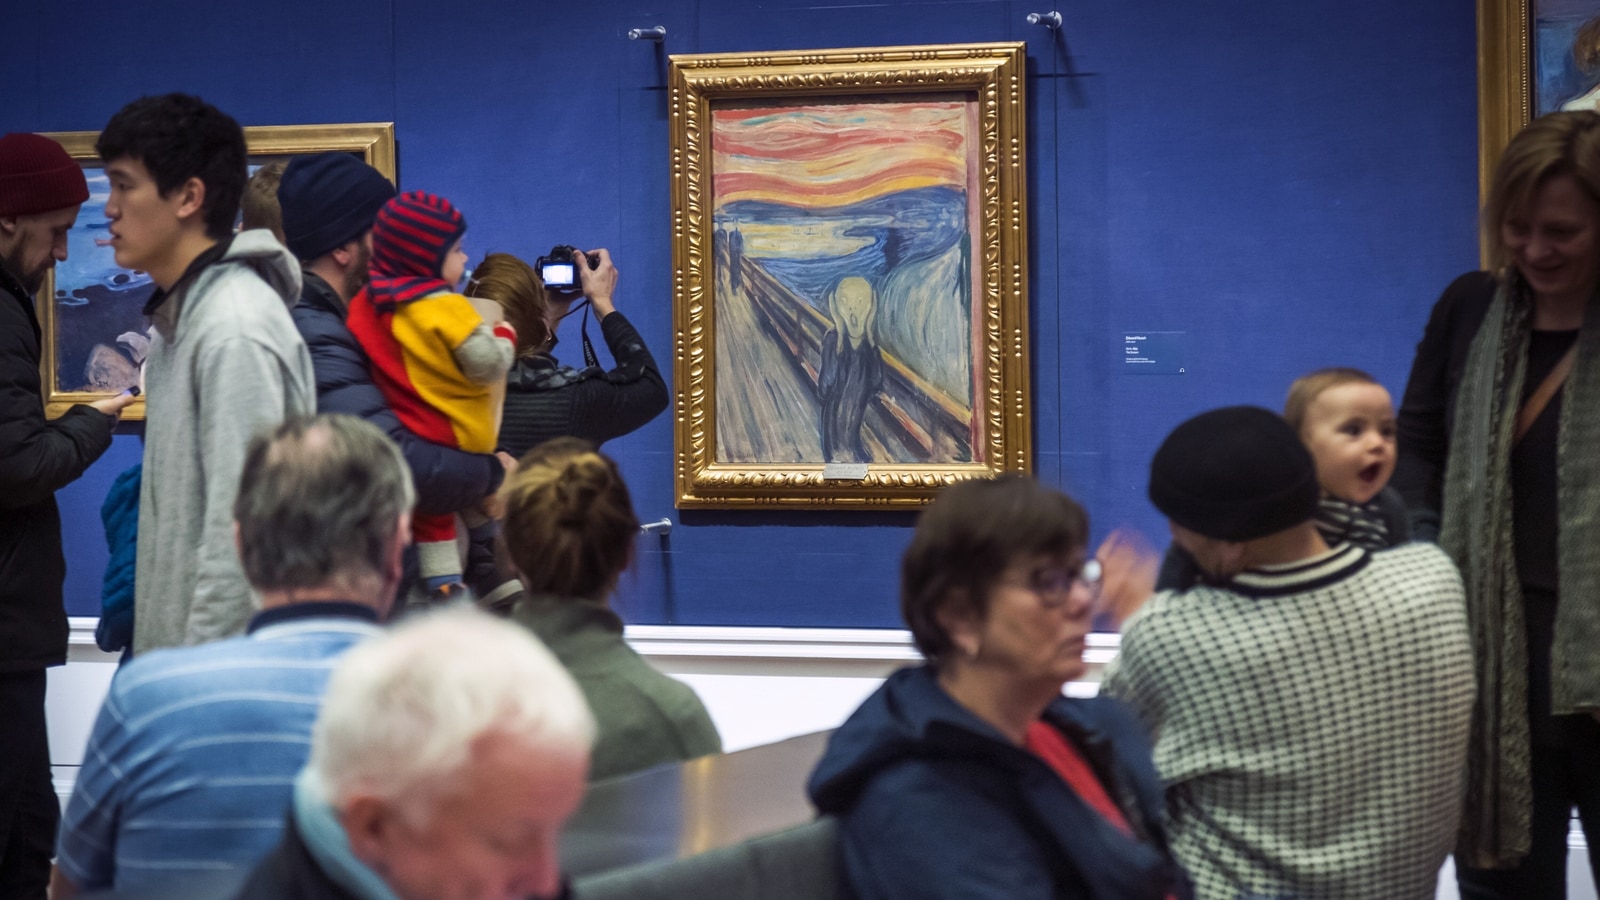 Ikonisk verk «Skriket» utstilt på Norsk museum er klimaforkjempernes siste mål |  Internasjonale nyheter